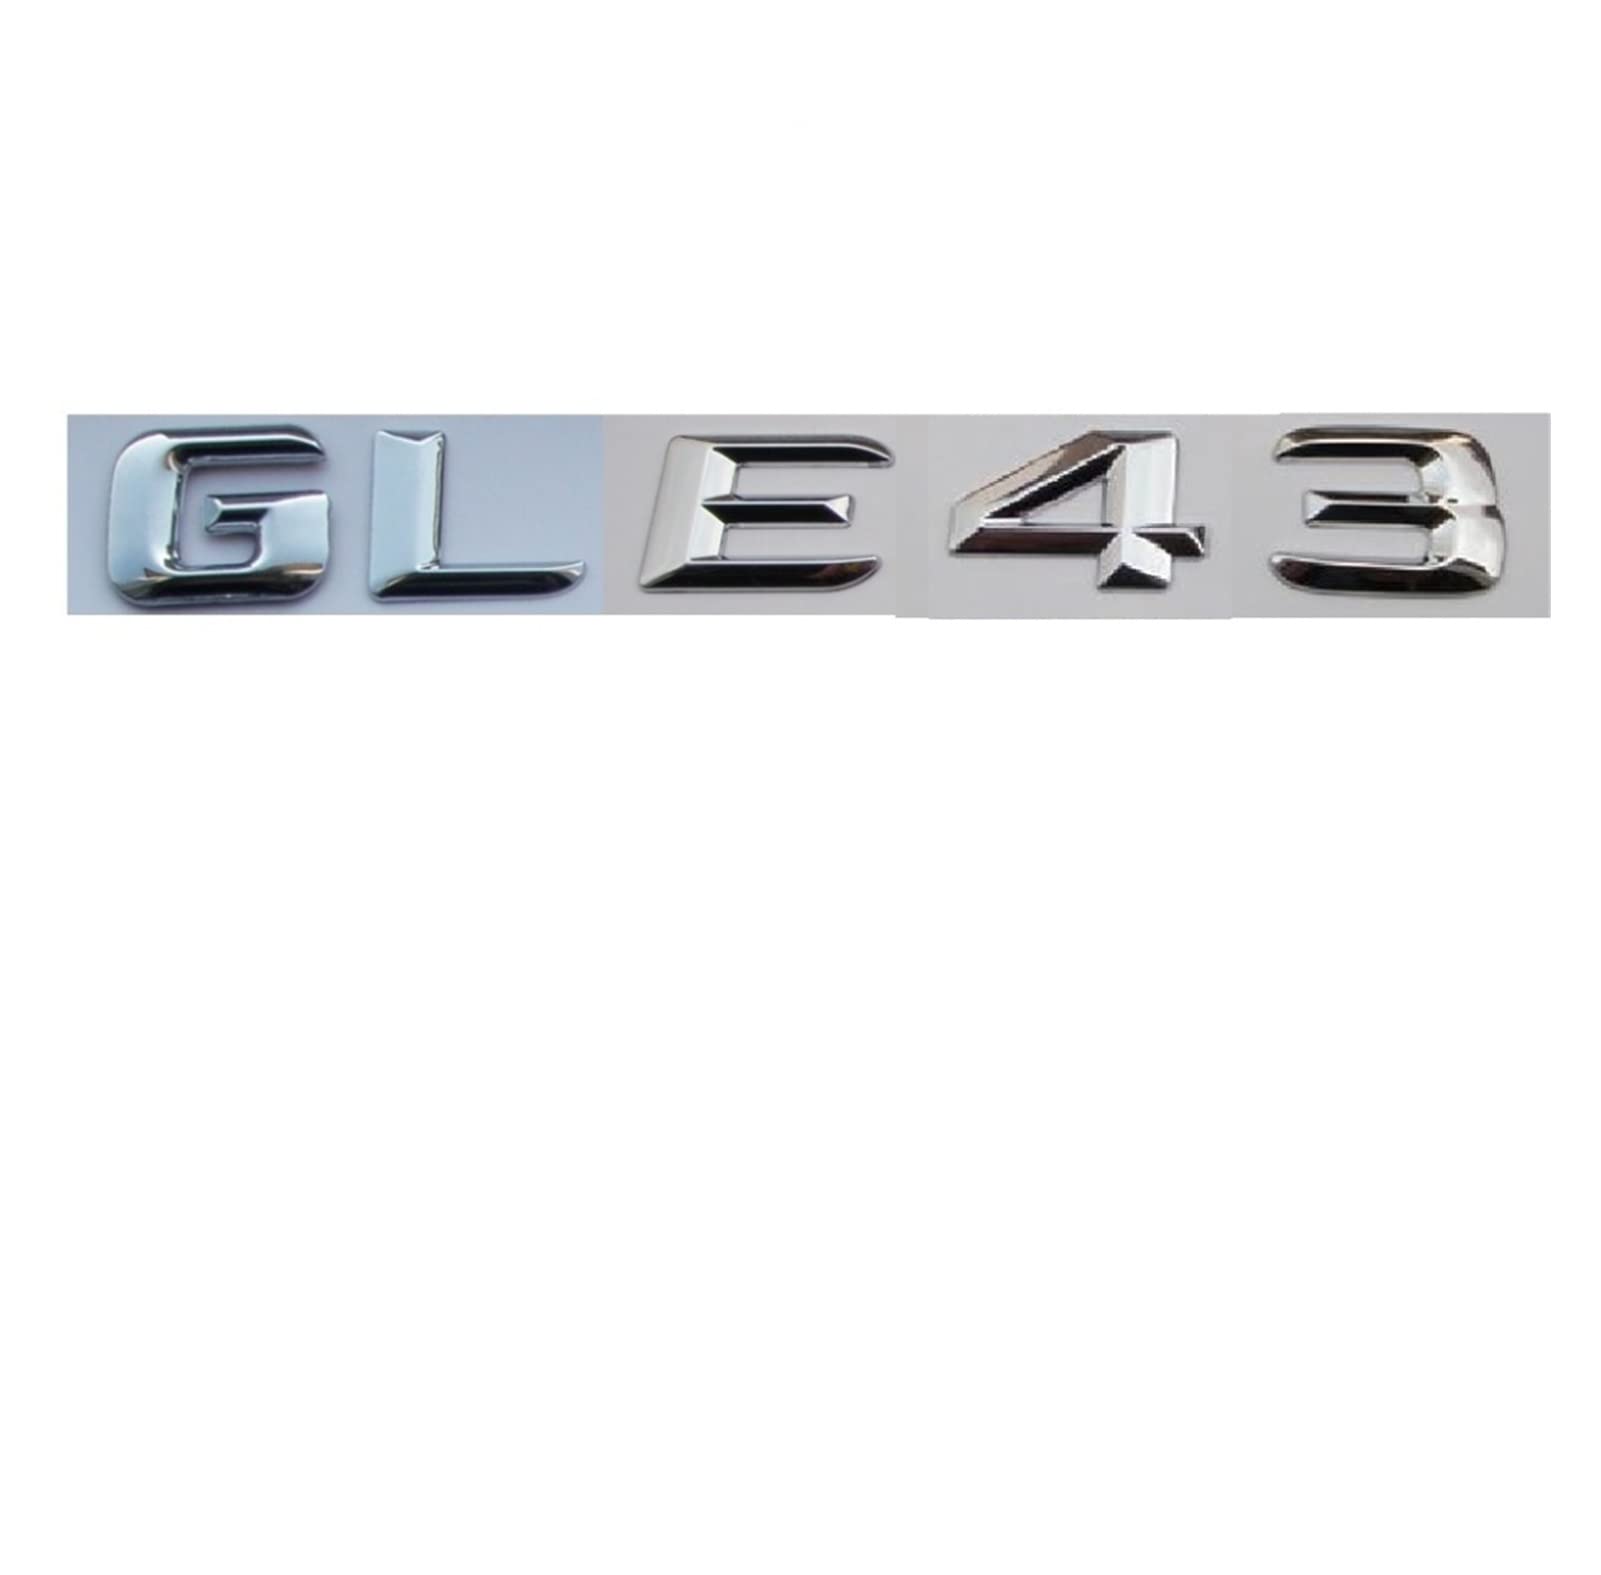 LORIER Chrom ABS GLE 43 Kunststoff Kofferraum Hinten Buchstaben Abzeichen Emblem Embleme Aufkleber Aufkleber Kompatibel mit Mercedes Benz GLE Klasse GLE43 AMG Logoaufkleber und Aufkleber von LoRier